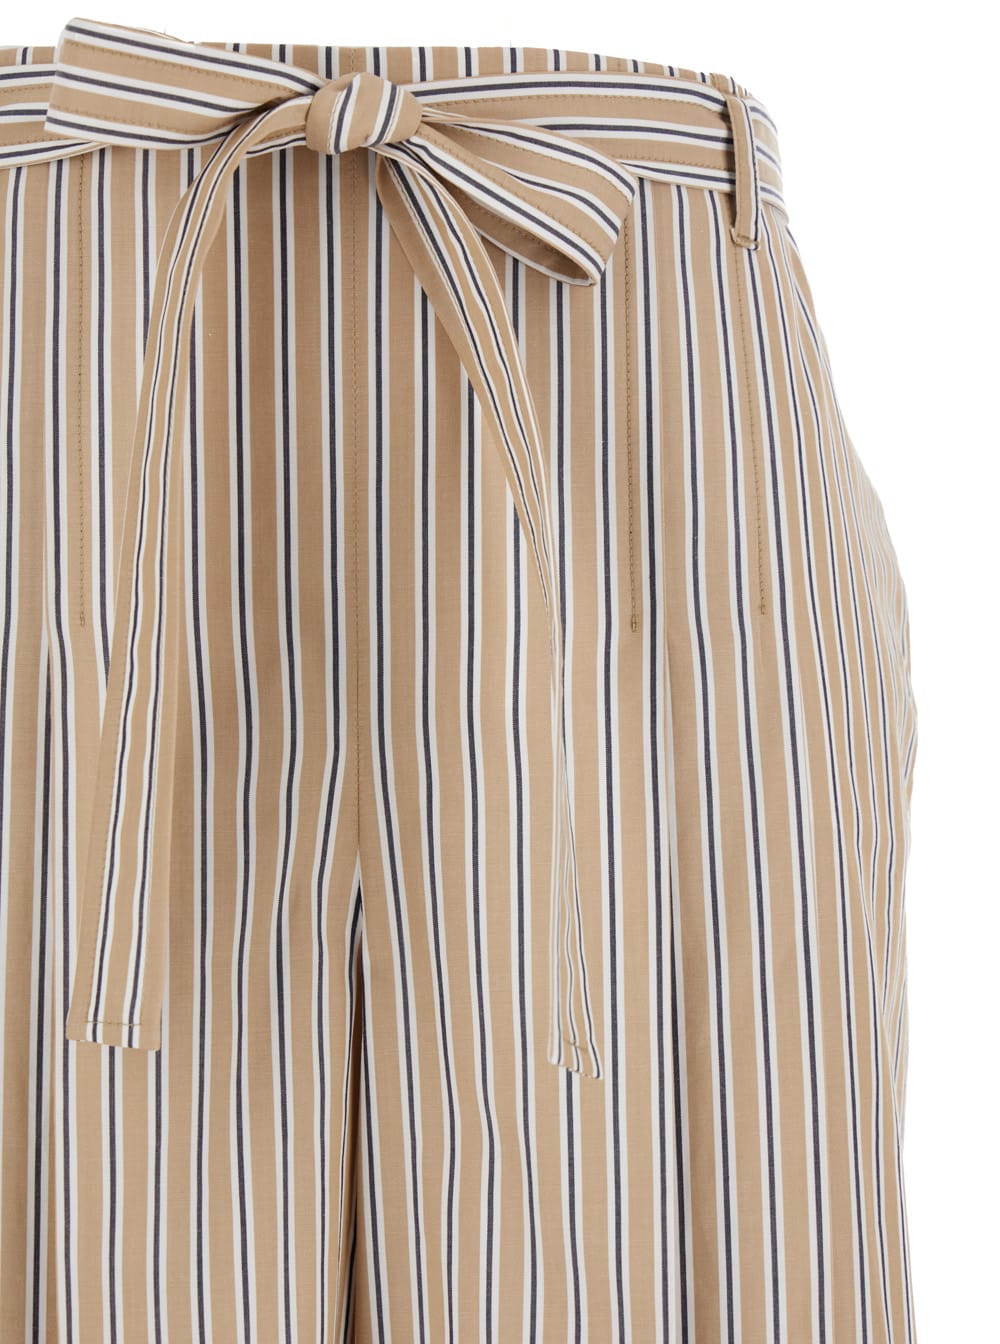 Shop Alberta Ferretti Beige Striped Pants With Bow Details In Popeline Woman